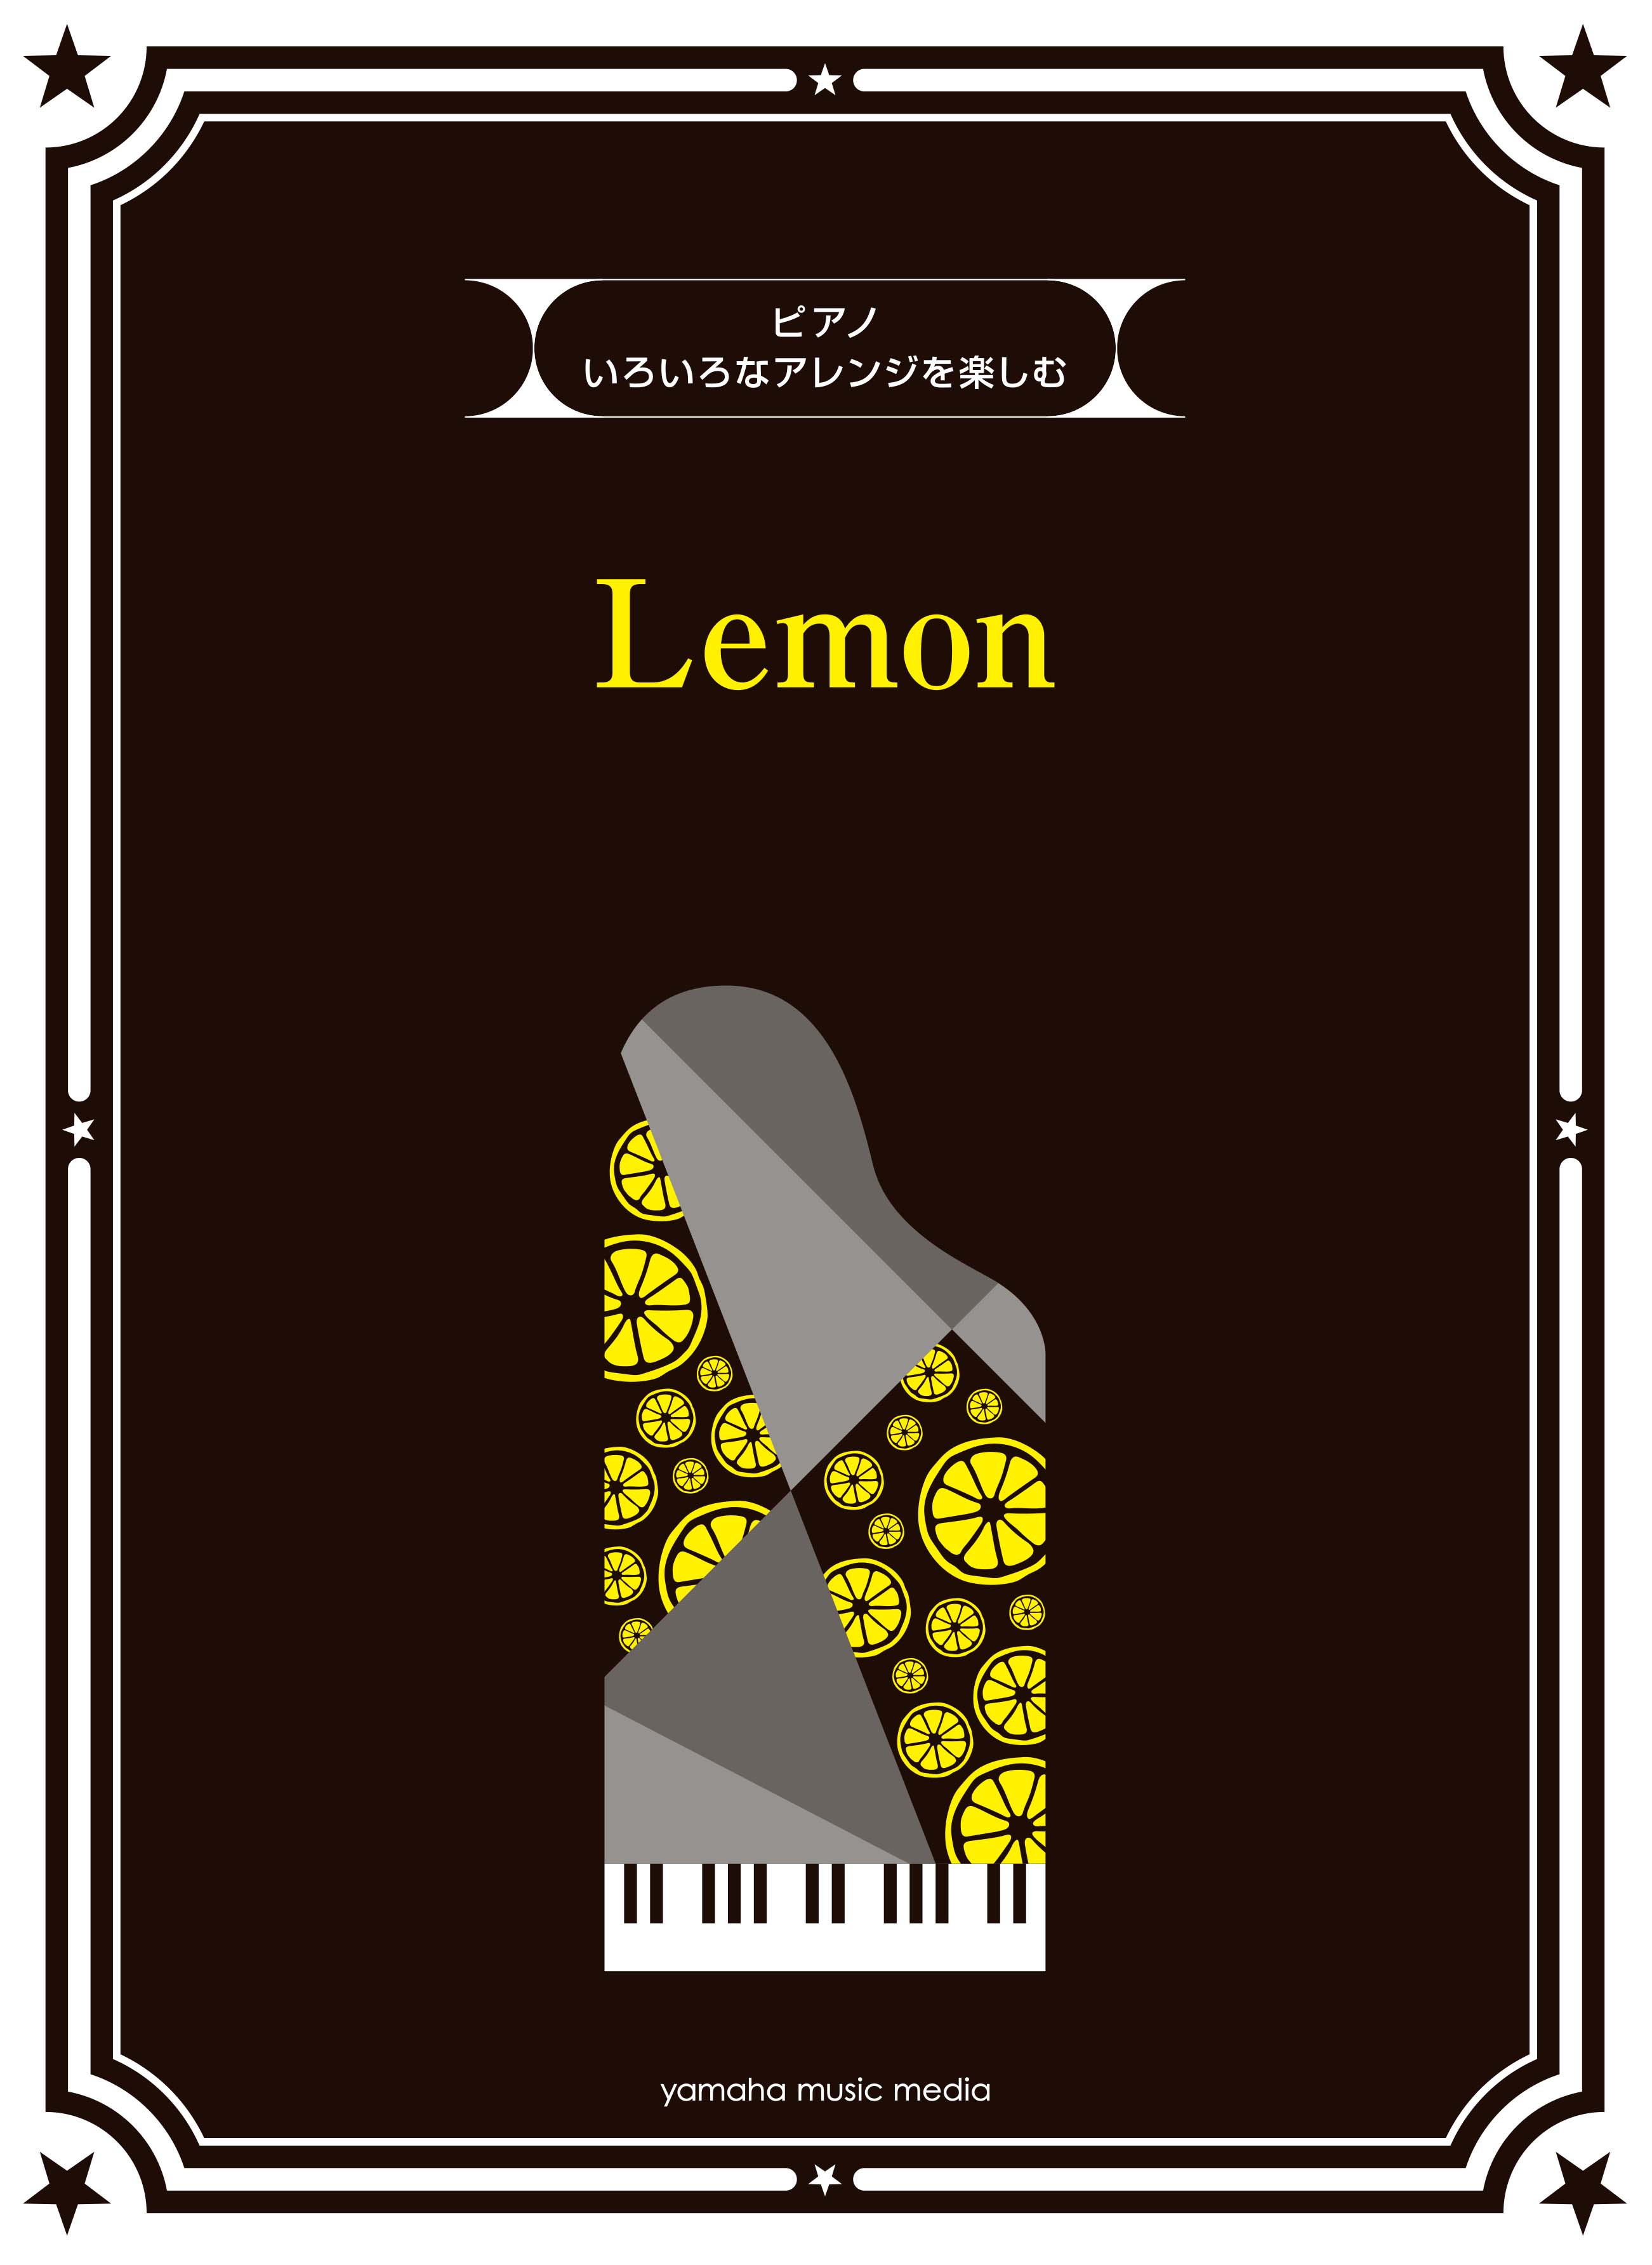 大ヒット曲 Lemon を7パターンのピアノアレンジとメロディ譜で